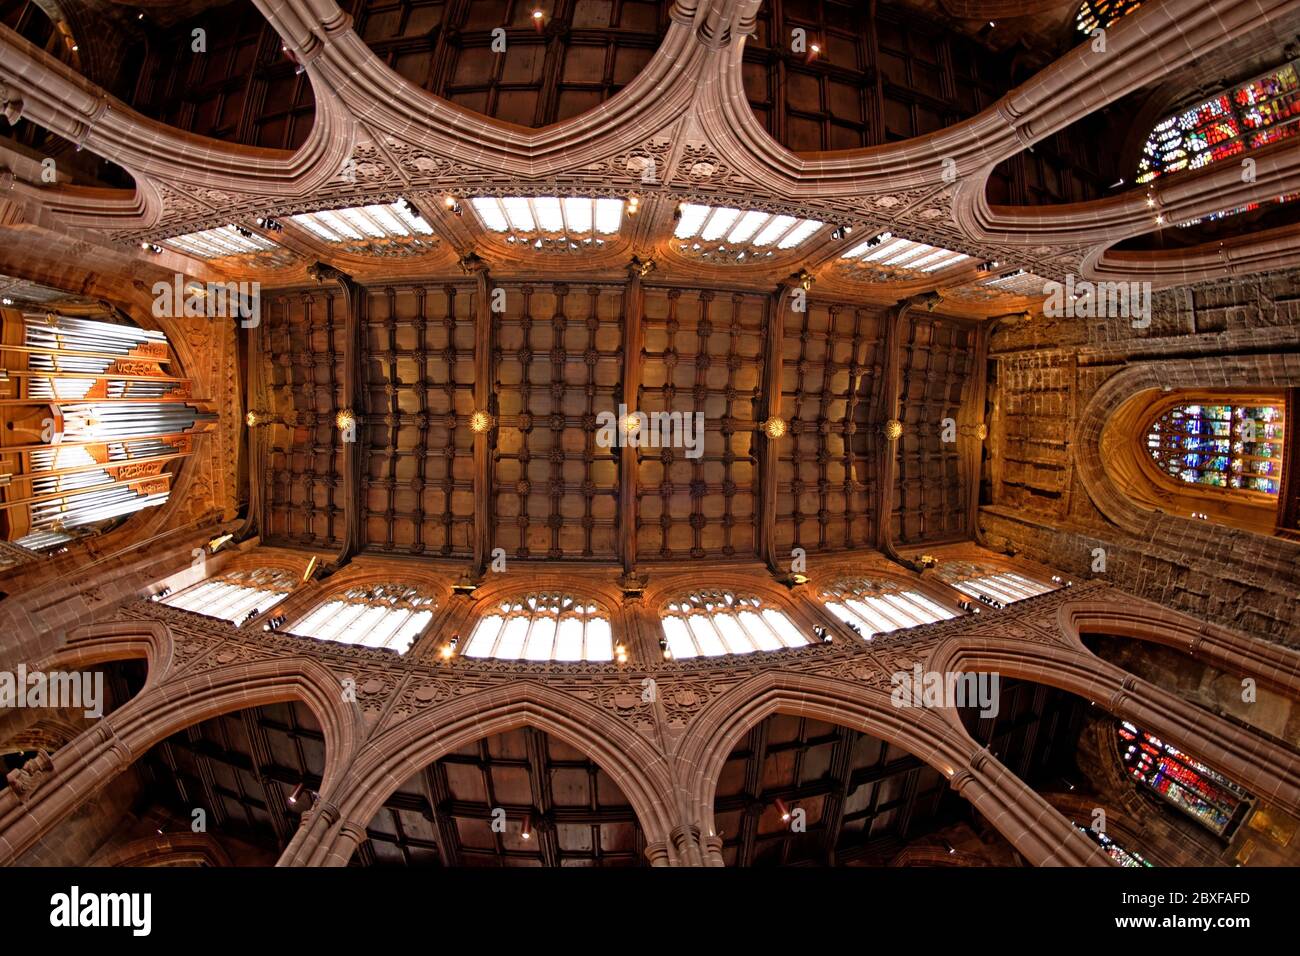 La cathédrale de Manchester est dotée de magnifiques murs et fenêtres voûtés, d'un plafond en bois robuste soutenu par quatorze anges musicaux Banque D'Images